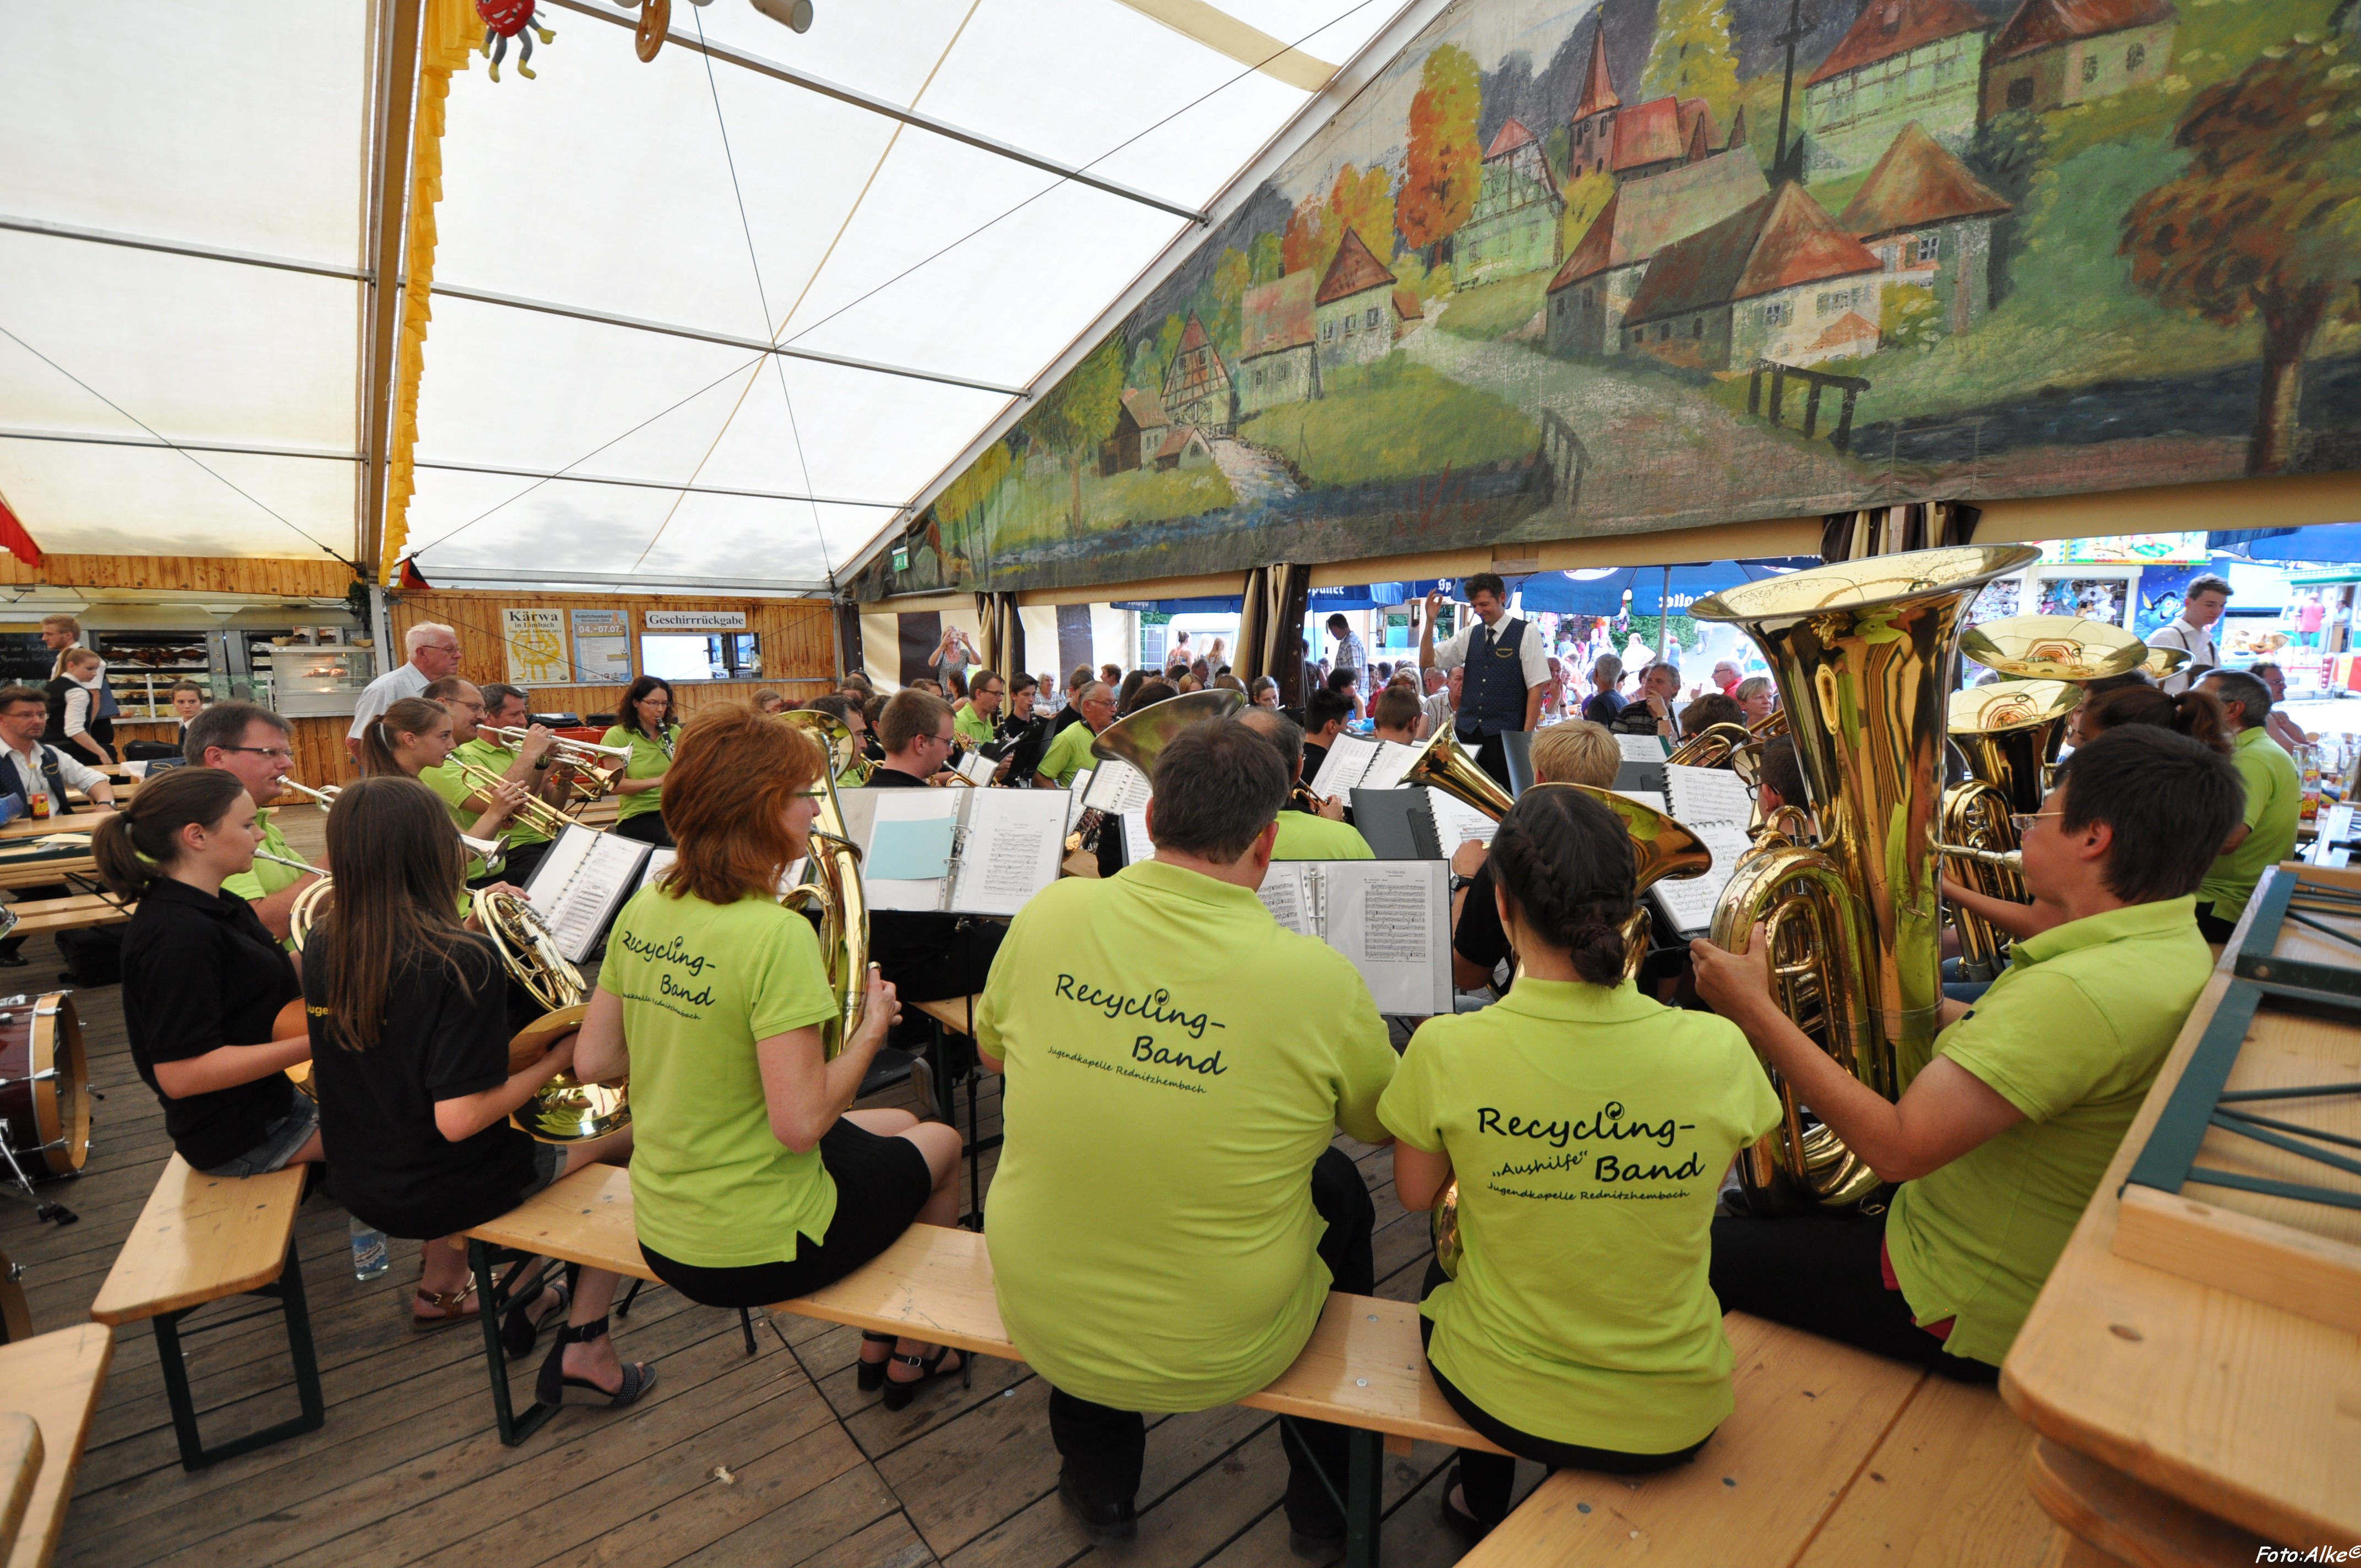 Jugendorchester und Recycling-Band sorgen für Stimmung im Bierzelt (2014)